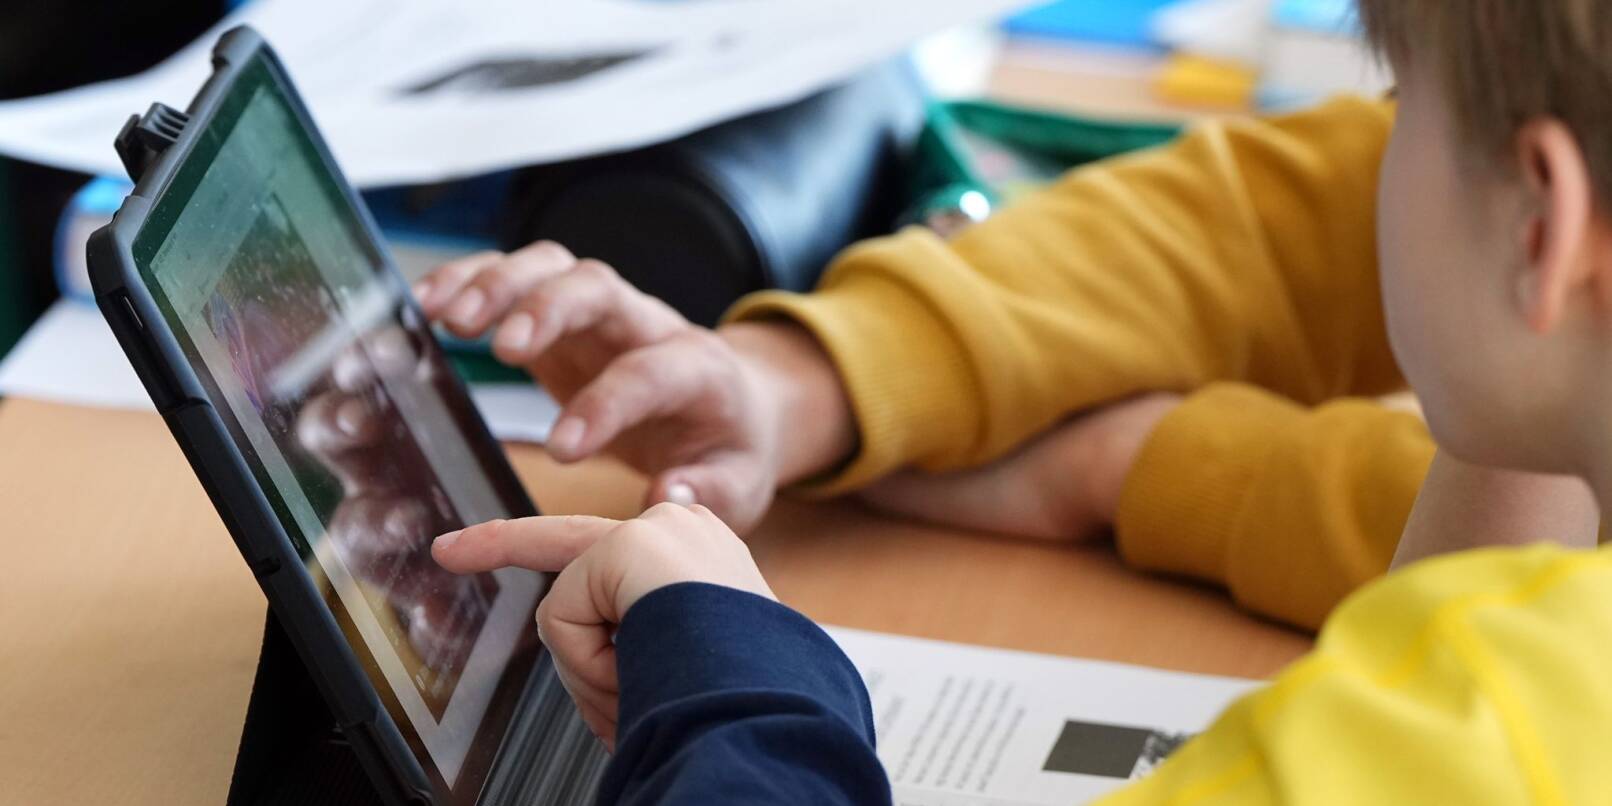 Schüler lösen im Unterricht an einem Tablet eine Aufgabe.